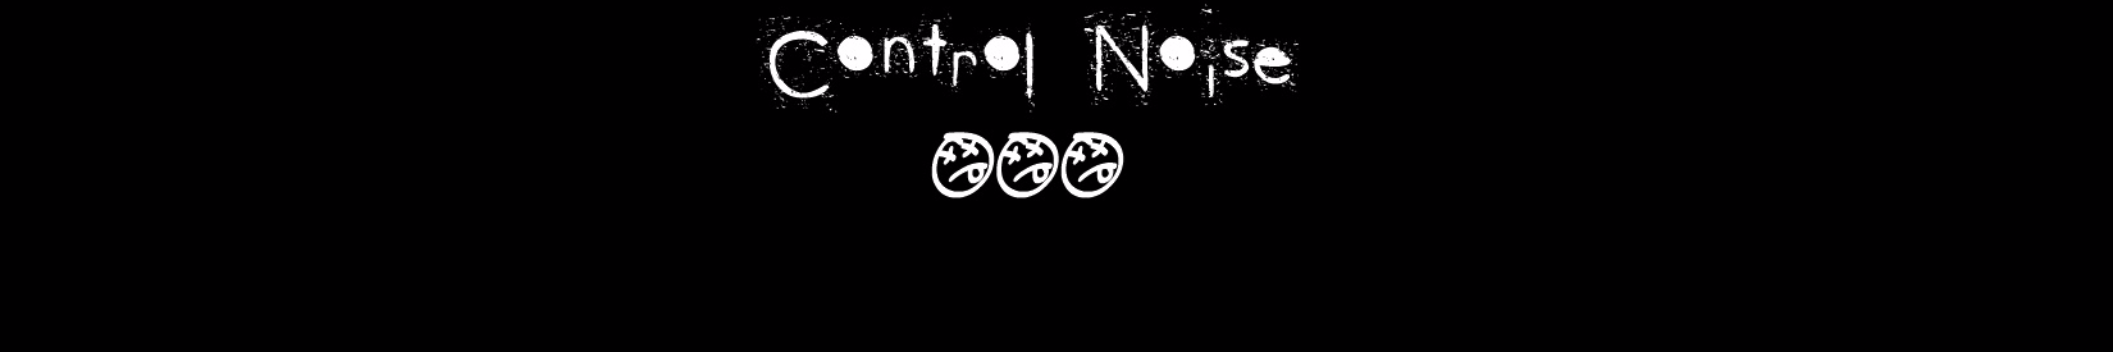 Control Noise